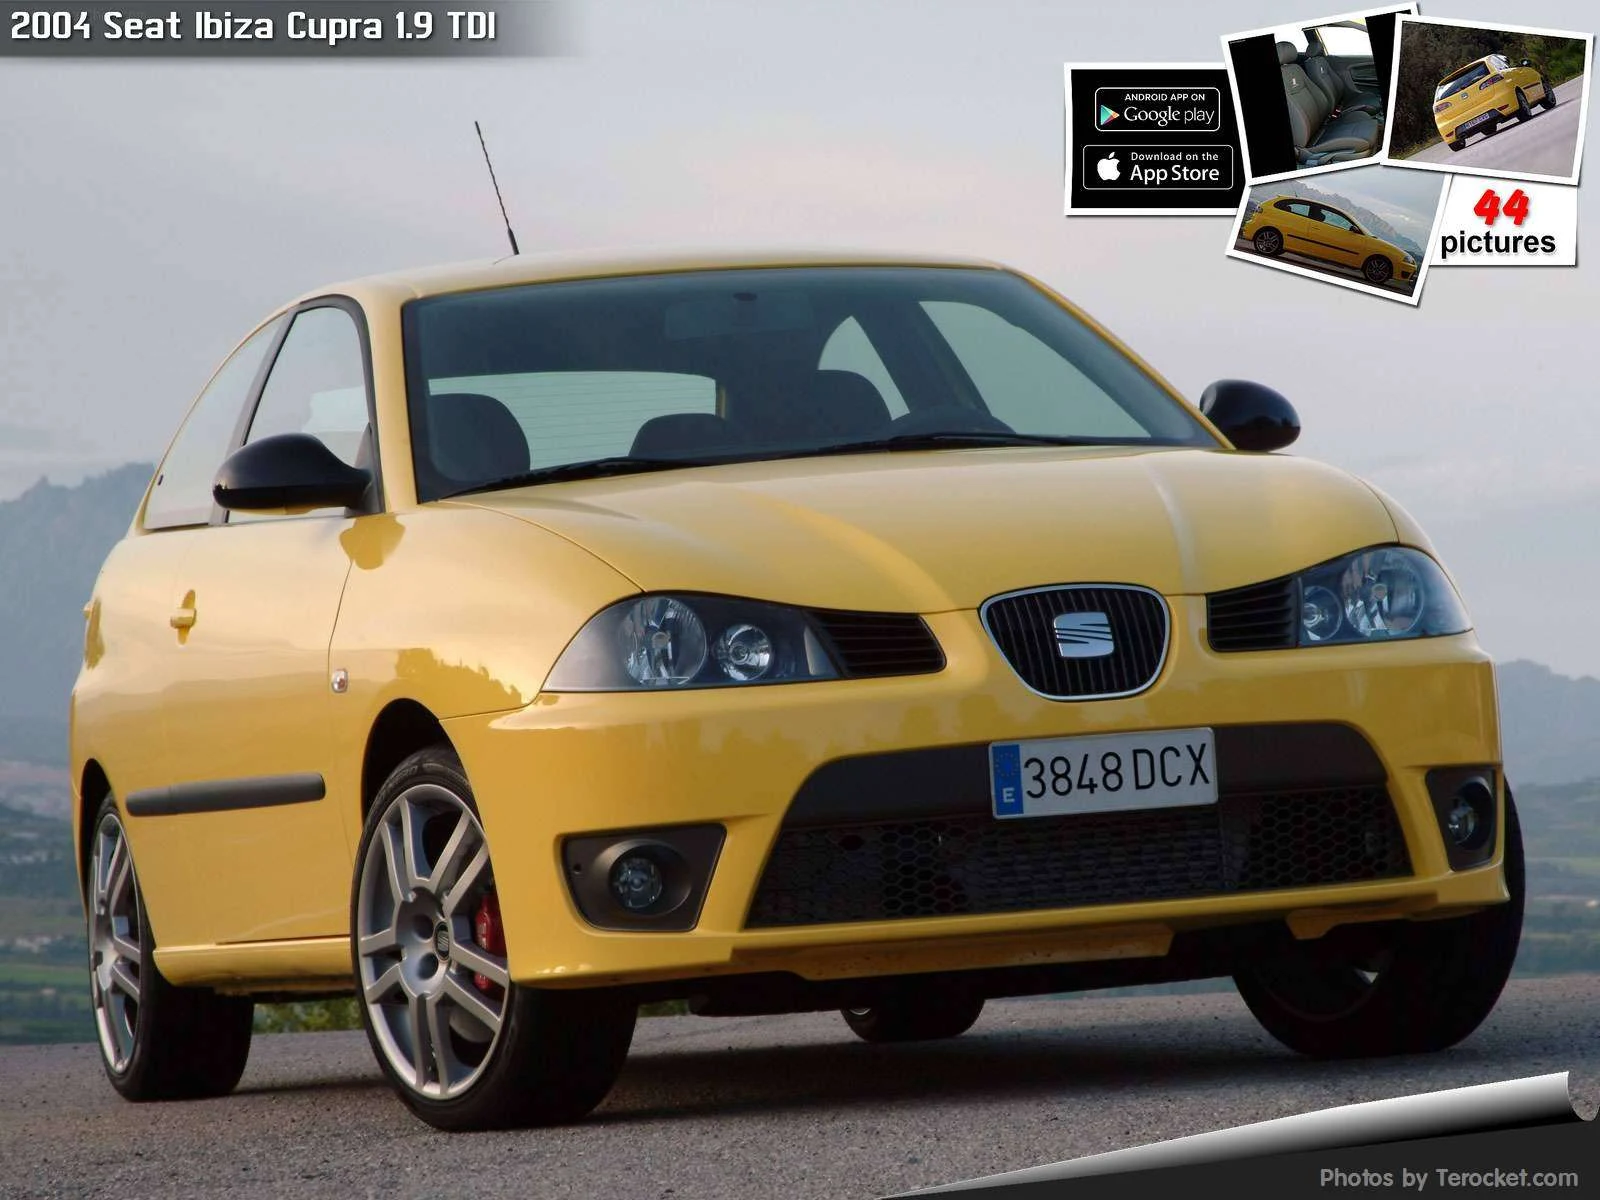 Hình ảnh xe ô tô Seat Ibiza Cupra 1.9 TDI 2004 & nội ngoại thất